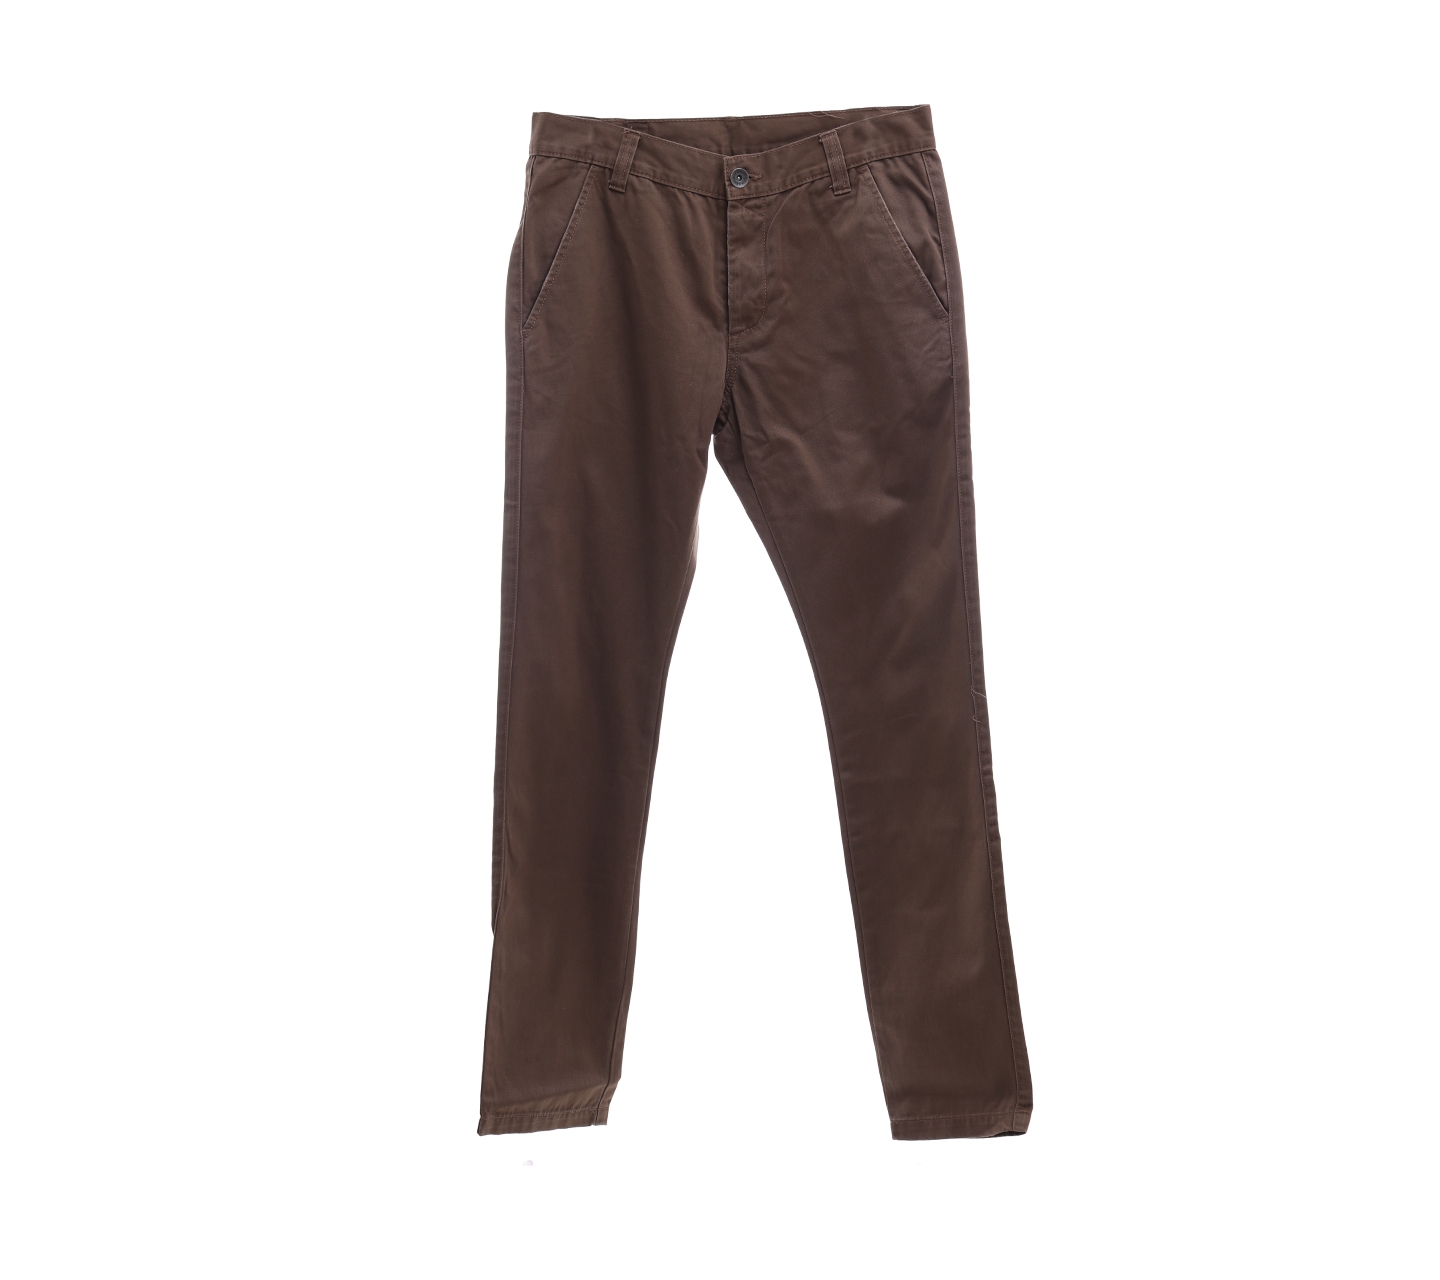 Drdenim brown long pants